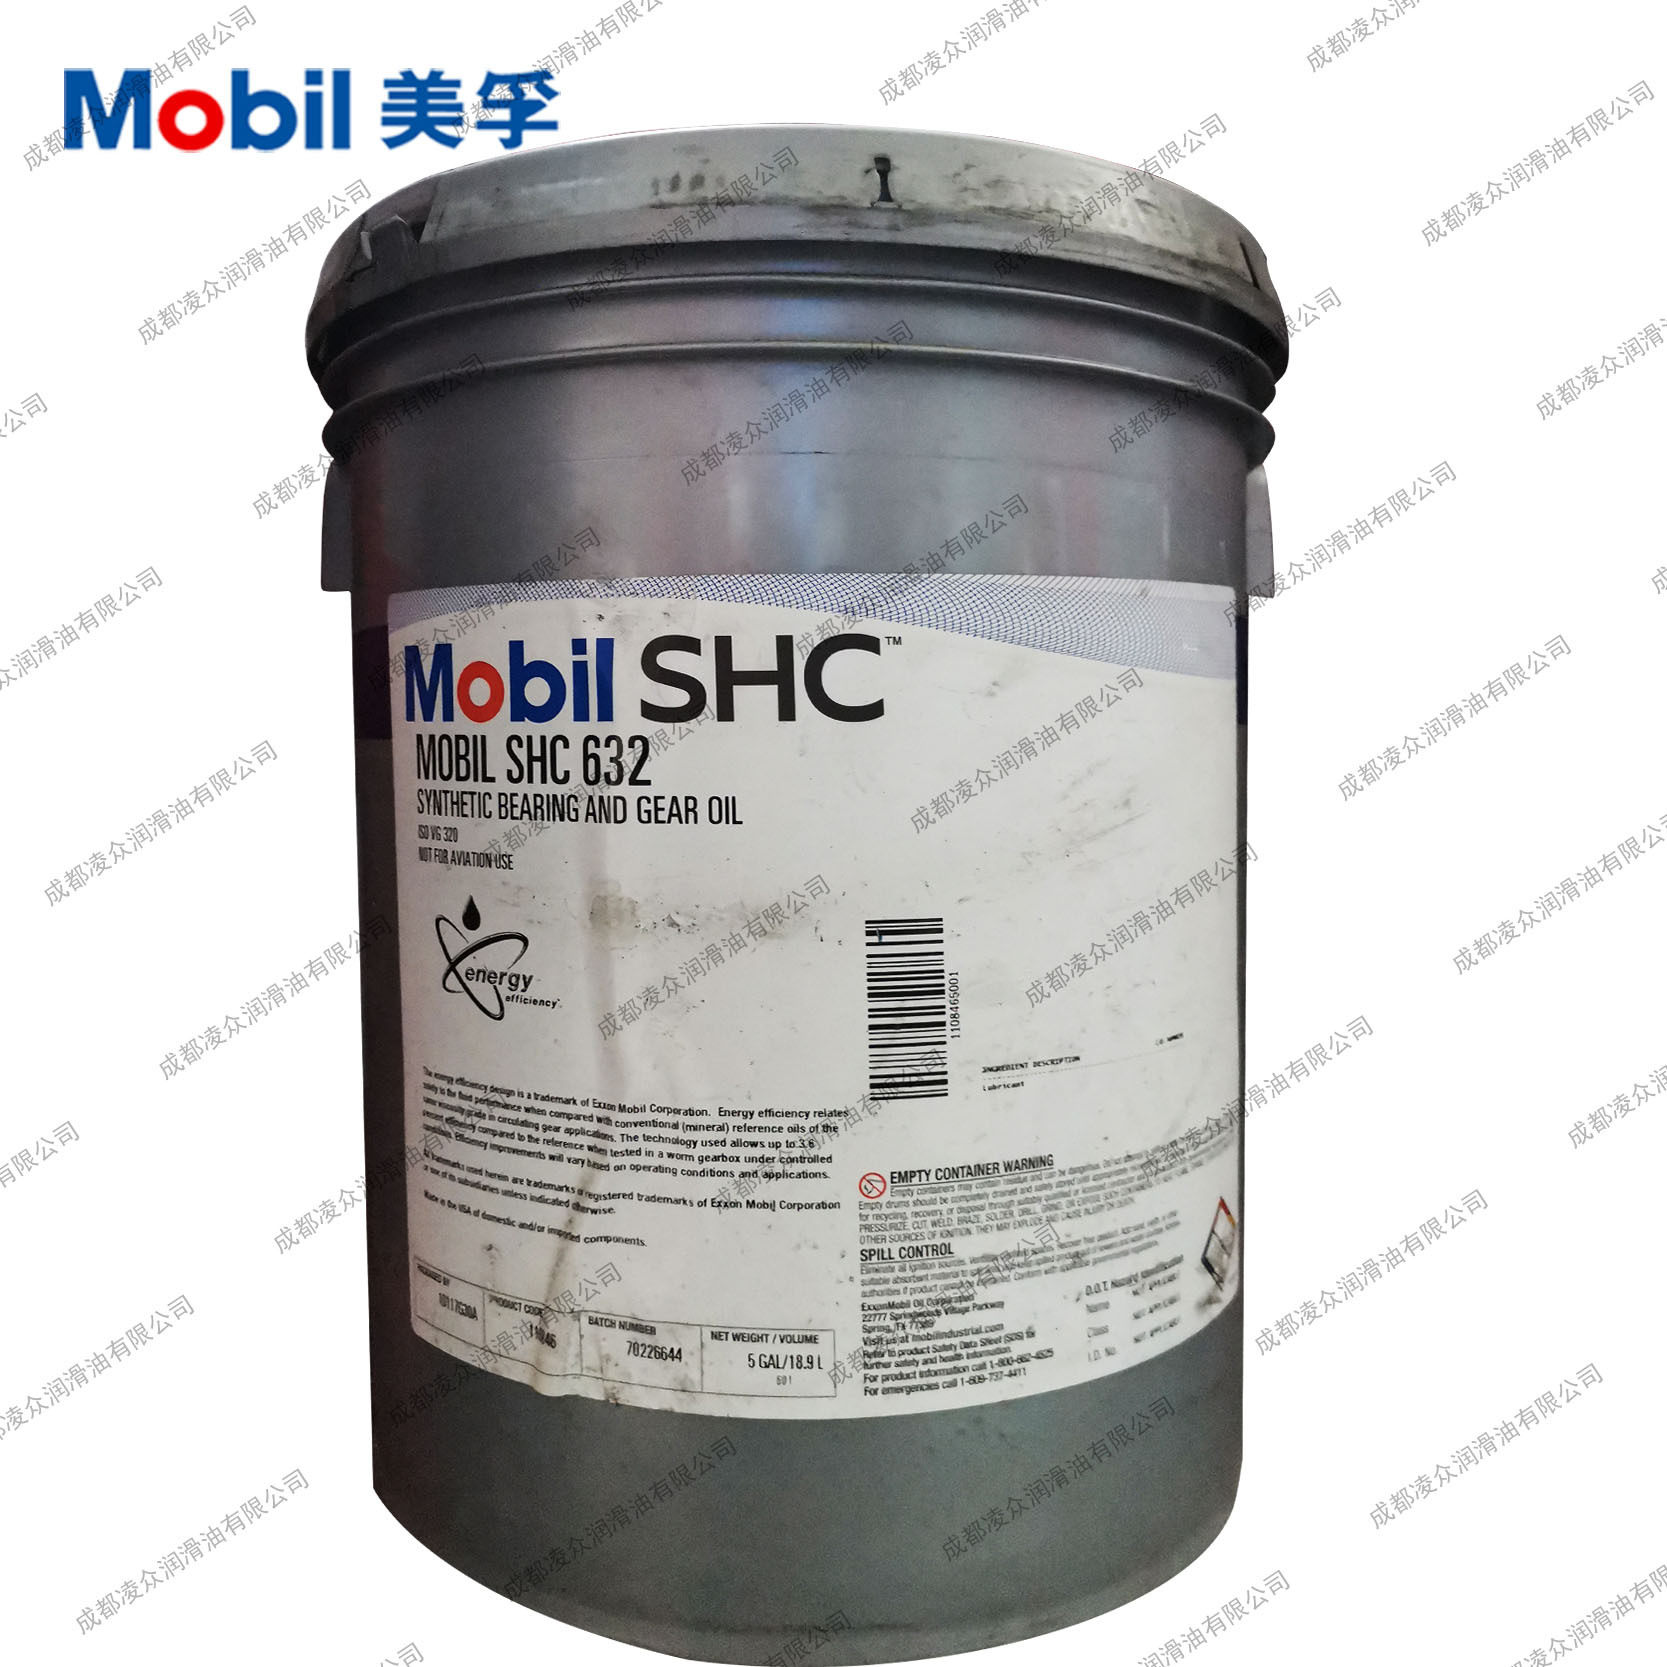 M|obil SHC 525合成液压油 美|孚SHC525 32号宽温抗磨液压油